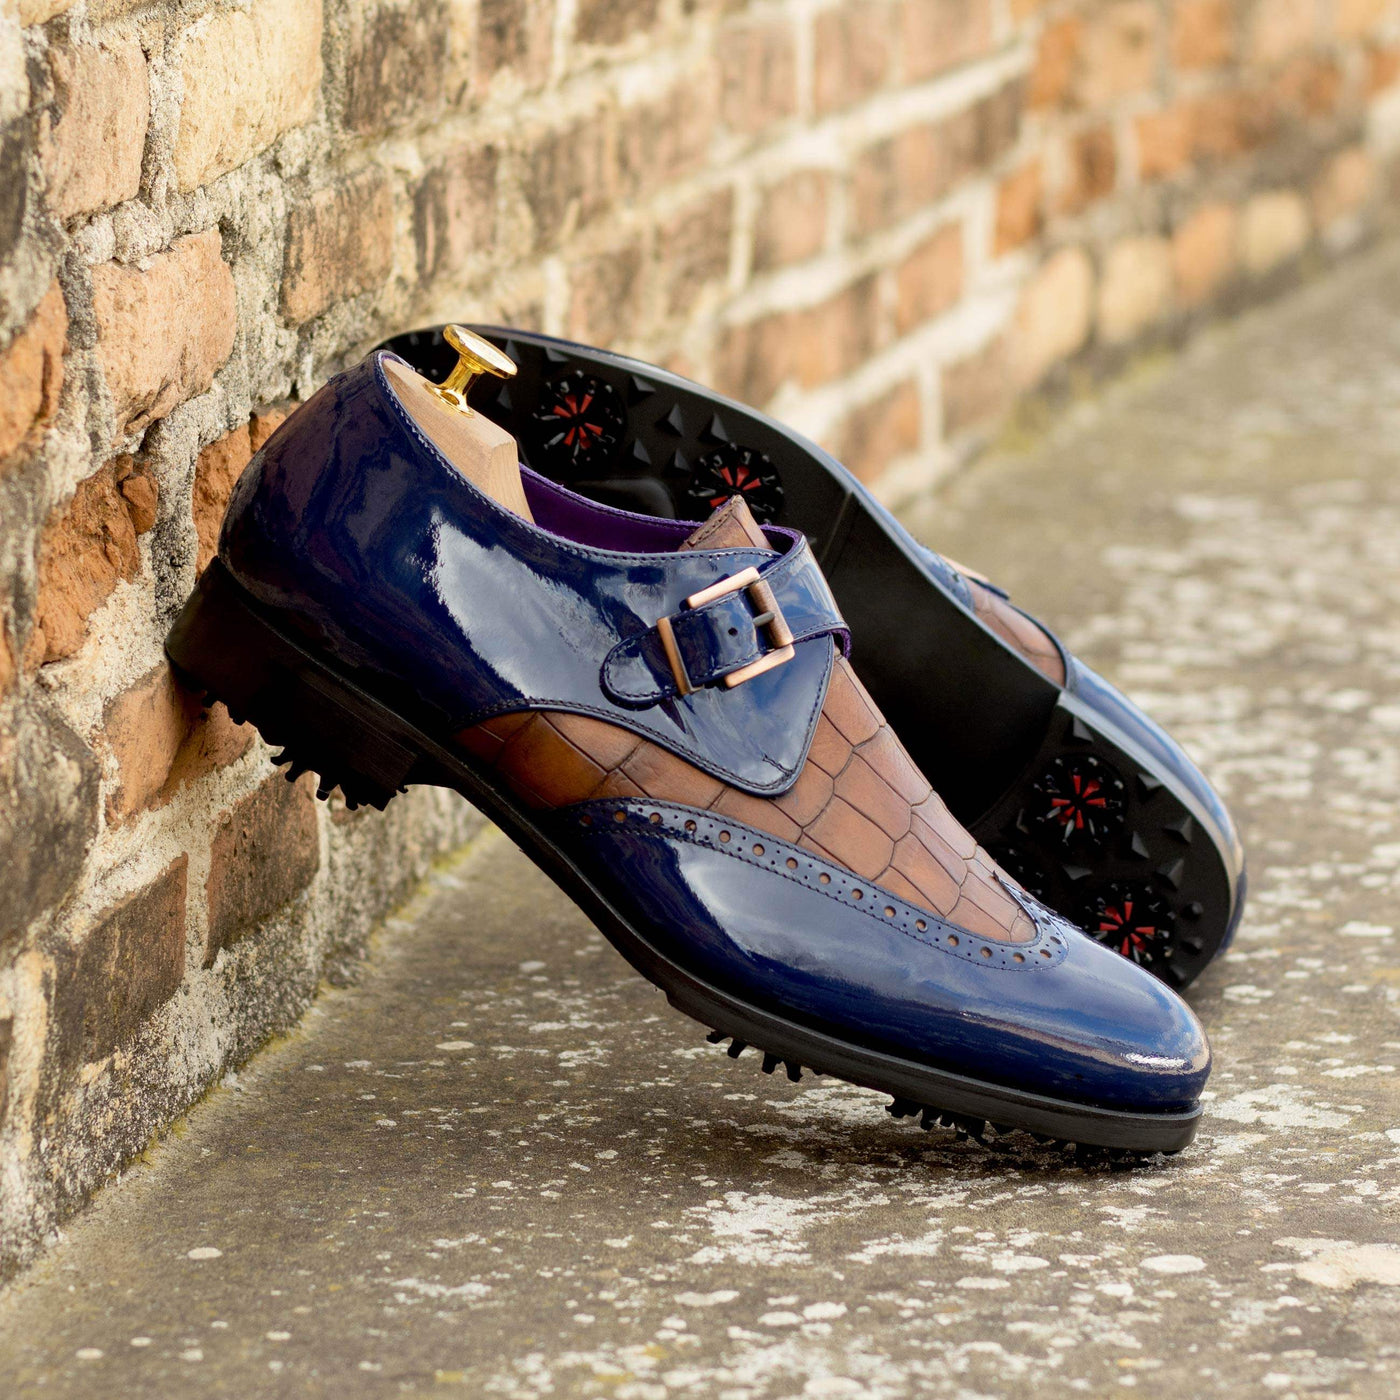 Men's Single Monk Golf Shoes Leather Blue Brown 5032 1- MERRIMIUM--GID-1416-5032